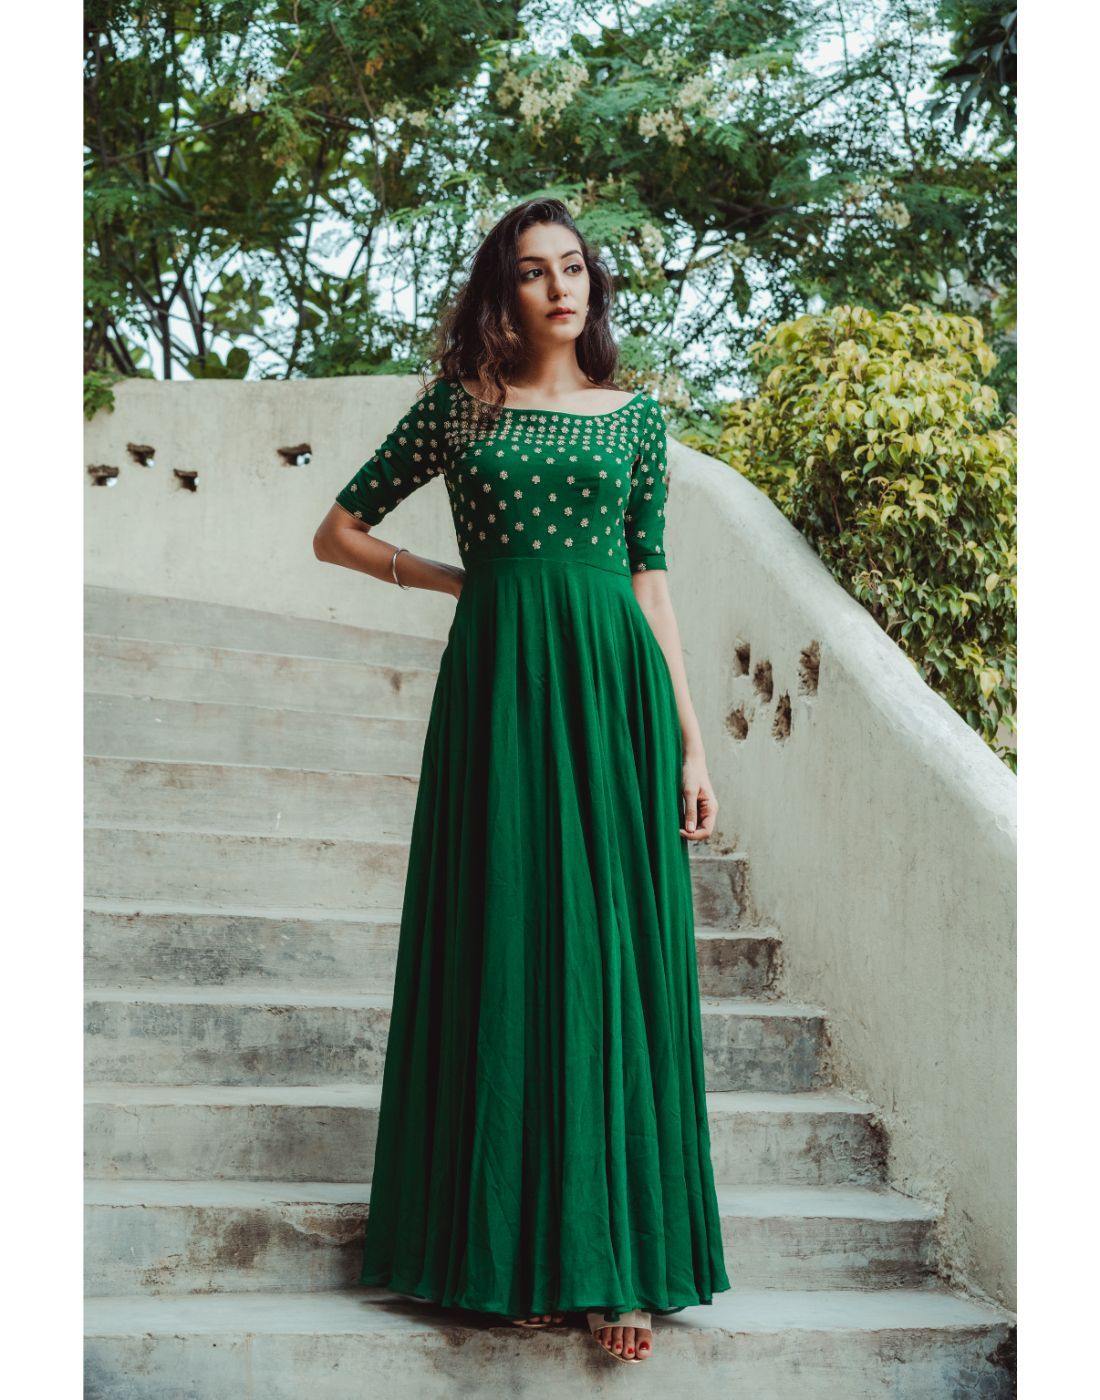 Green Dresses For Women| Dark Green Dresses - Ever-Pretty UK